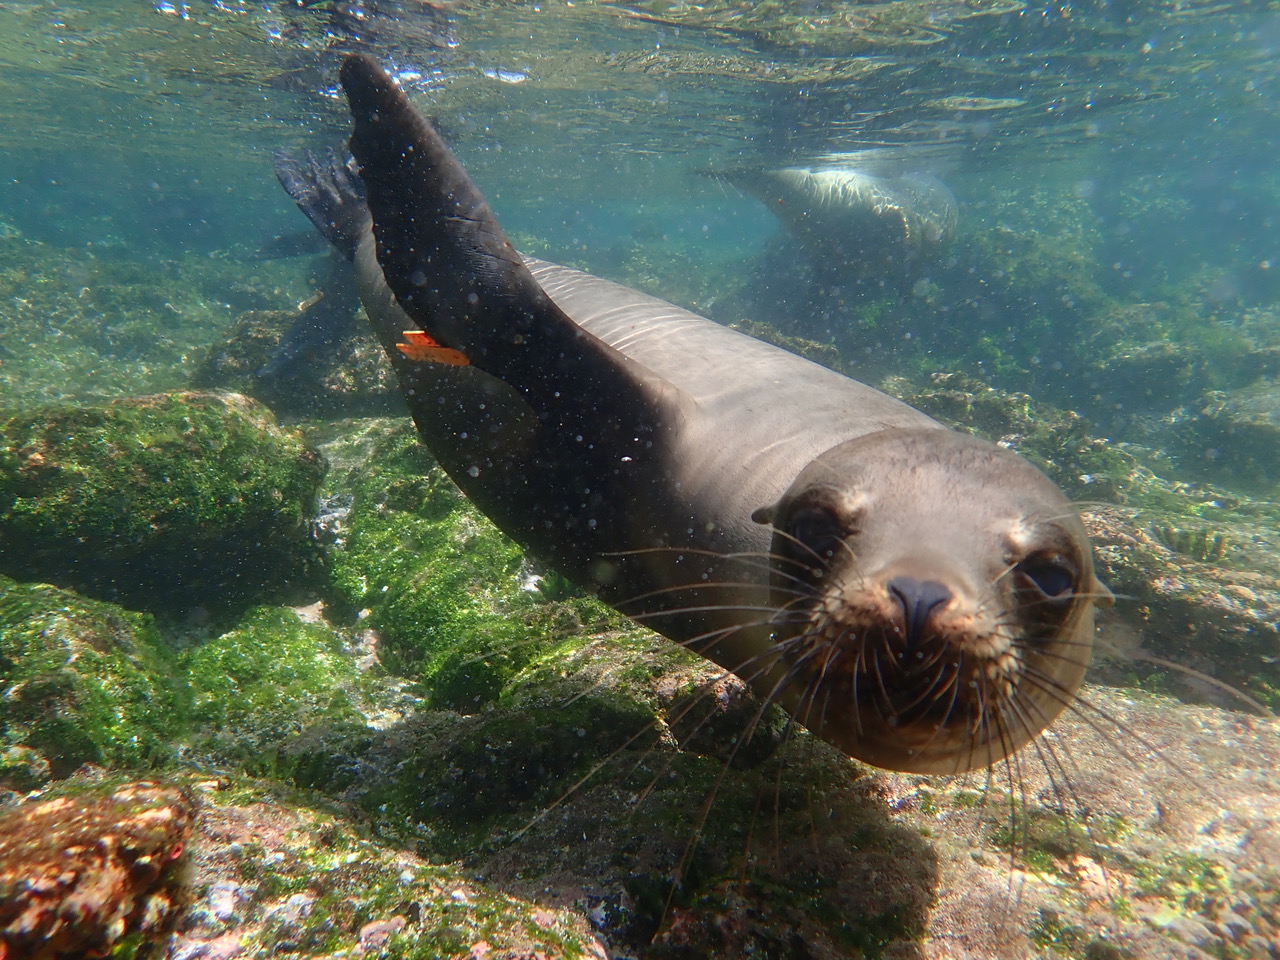 sea lion under water